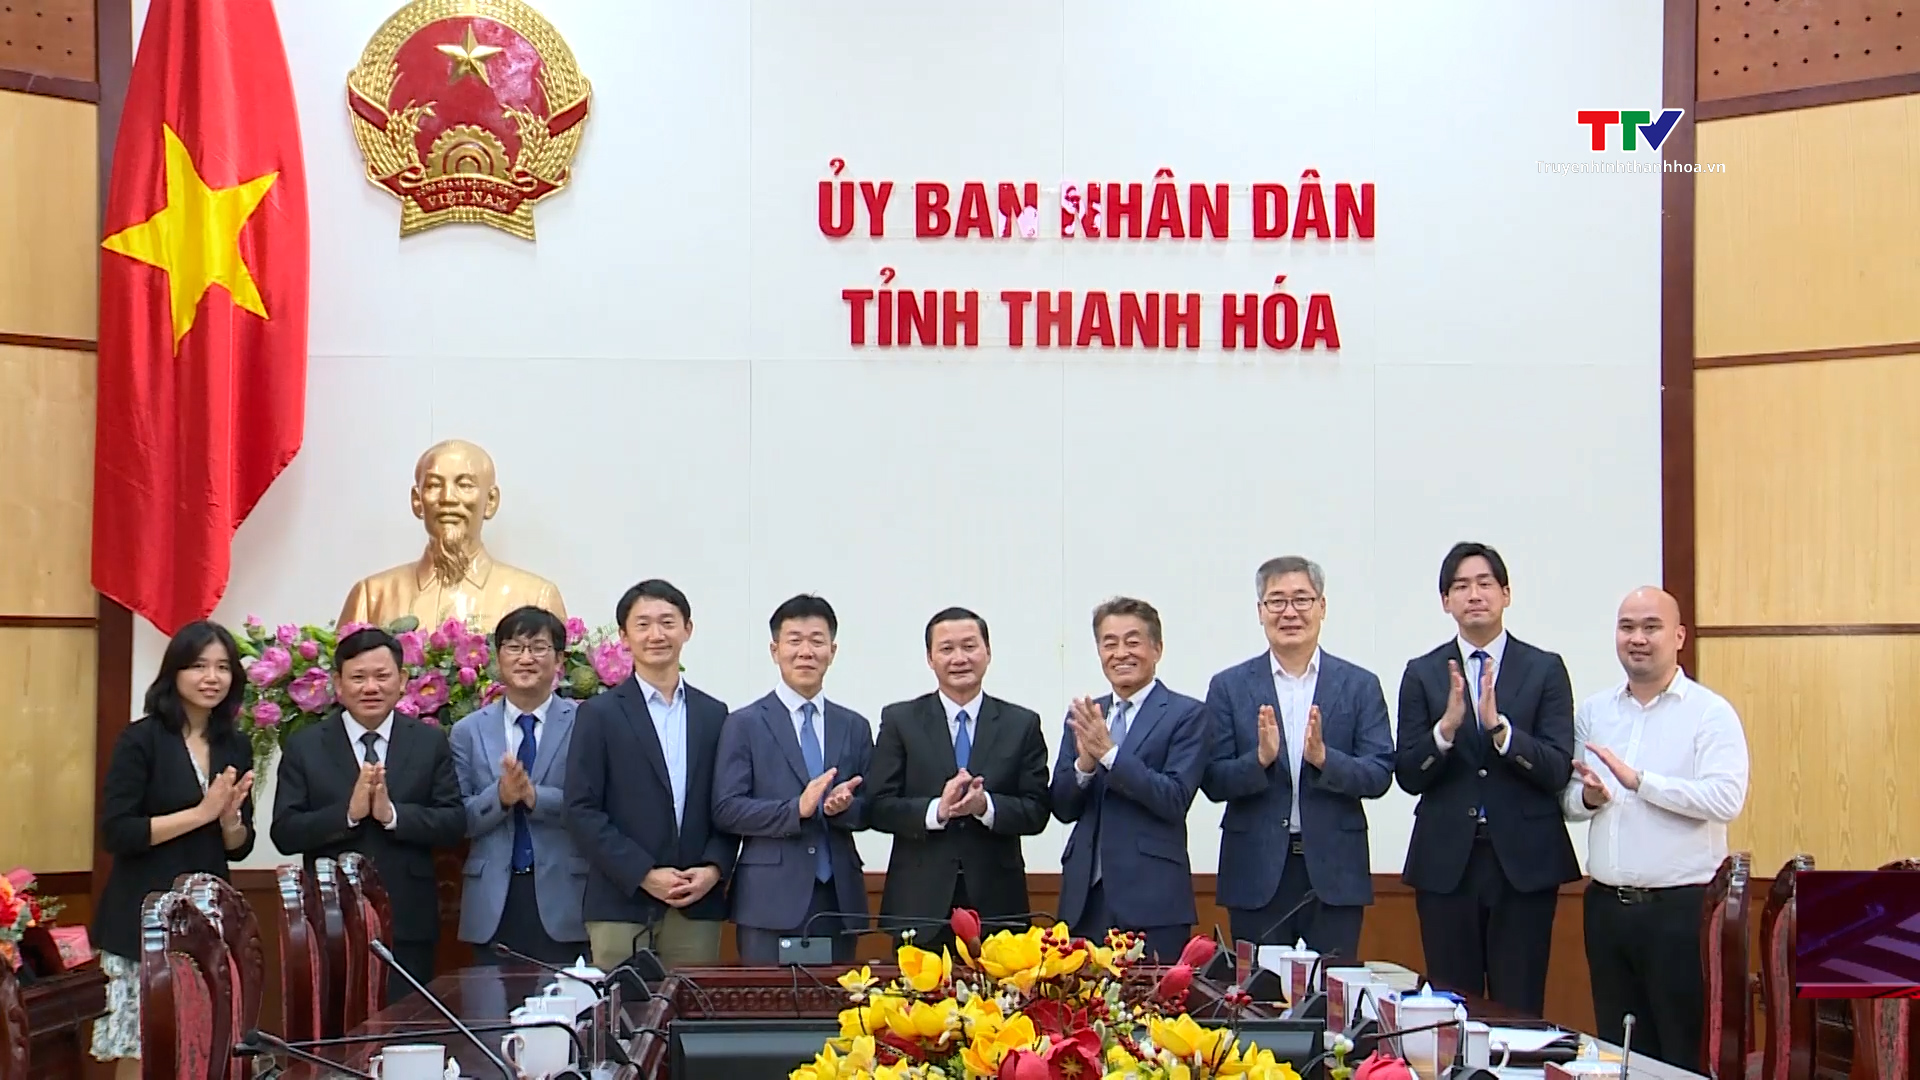 UBND tỉnh Thanh Hóa làm việc với Công ty TNHH Điện Nghi Sơn 2 - Ảnh 5.